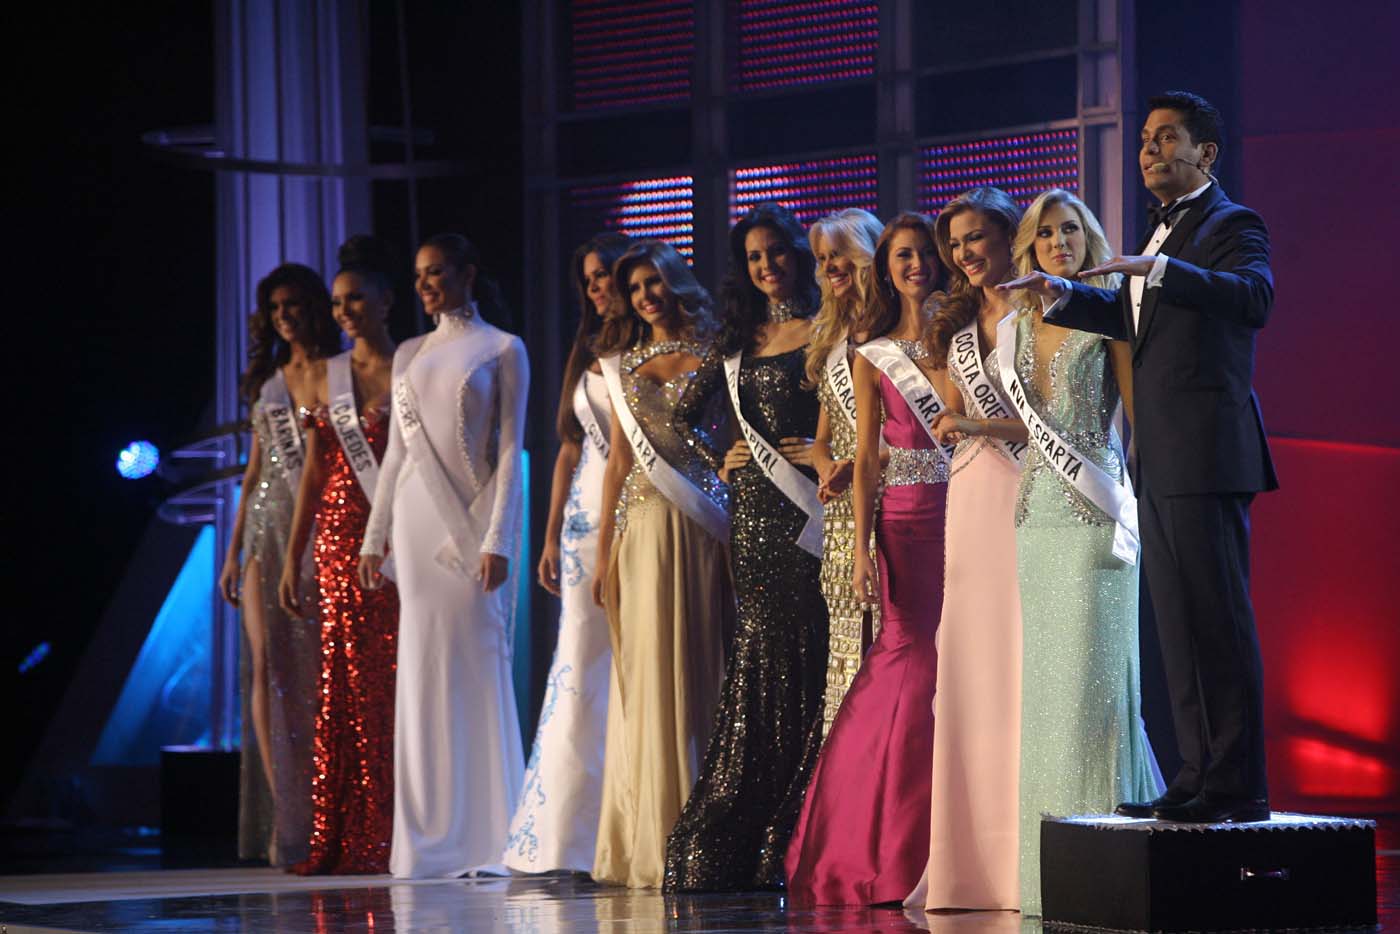 Lo que usted no vio del Miss Venezuela (Fotos)